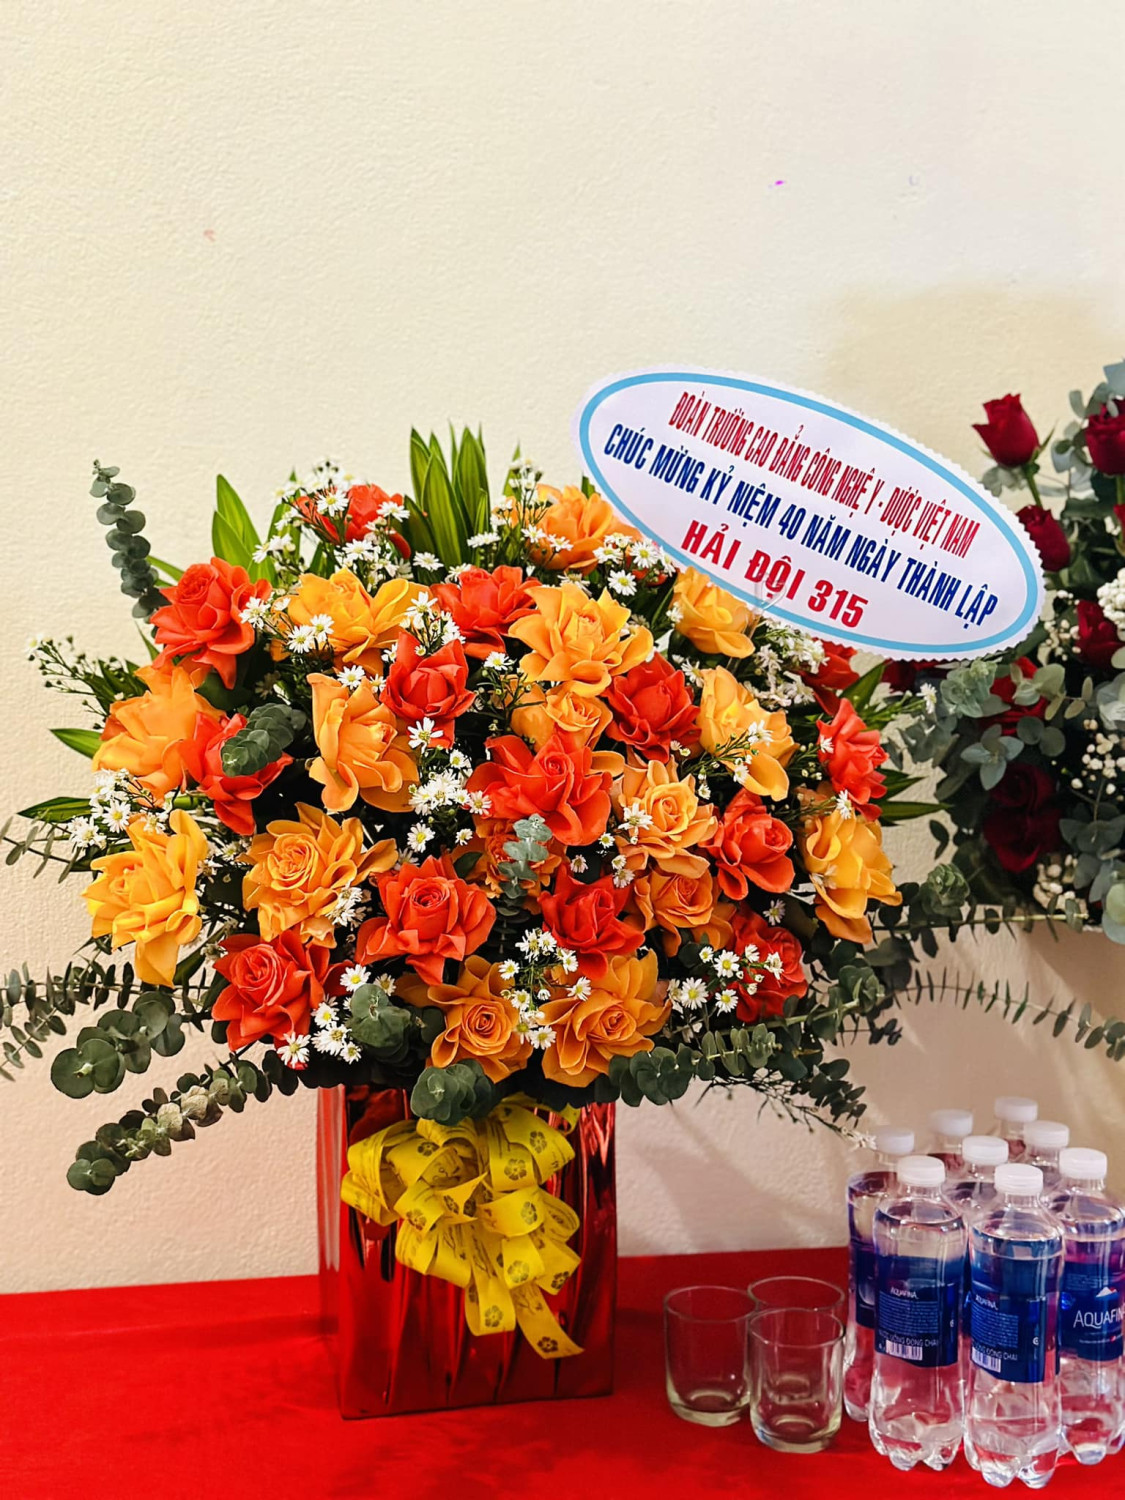  Trường Cao đẳng Công nghệ Y – Dược Việt Nam thăm và chúc mừng Kỷ niệm 40 năm thành lập Hải đội 315, Lữ đoàn 172, Vùng 3 Hải quân